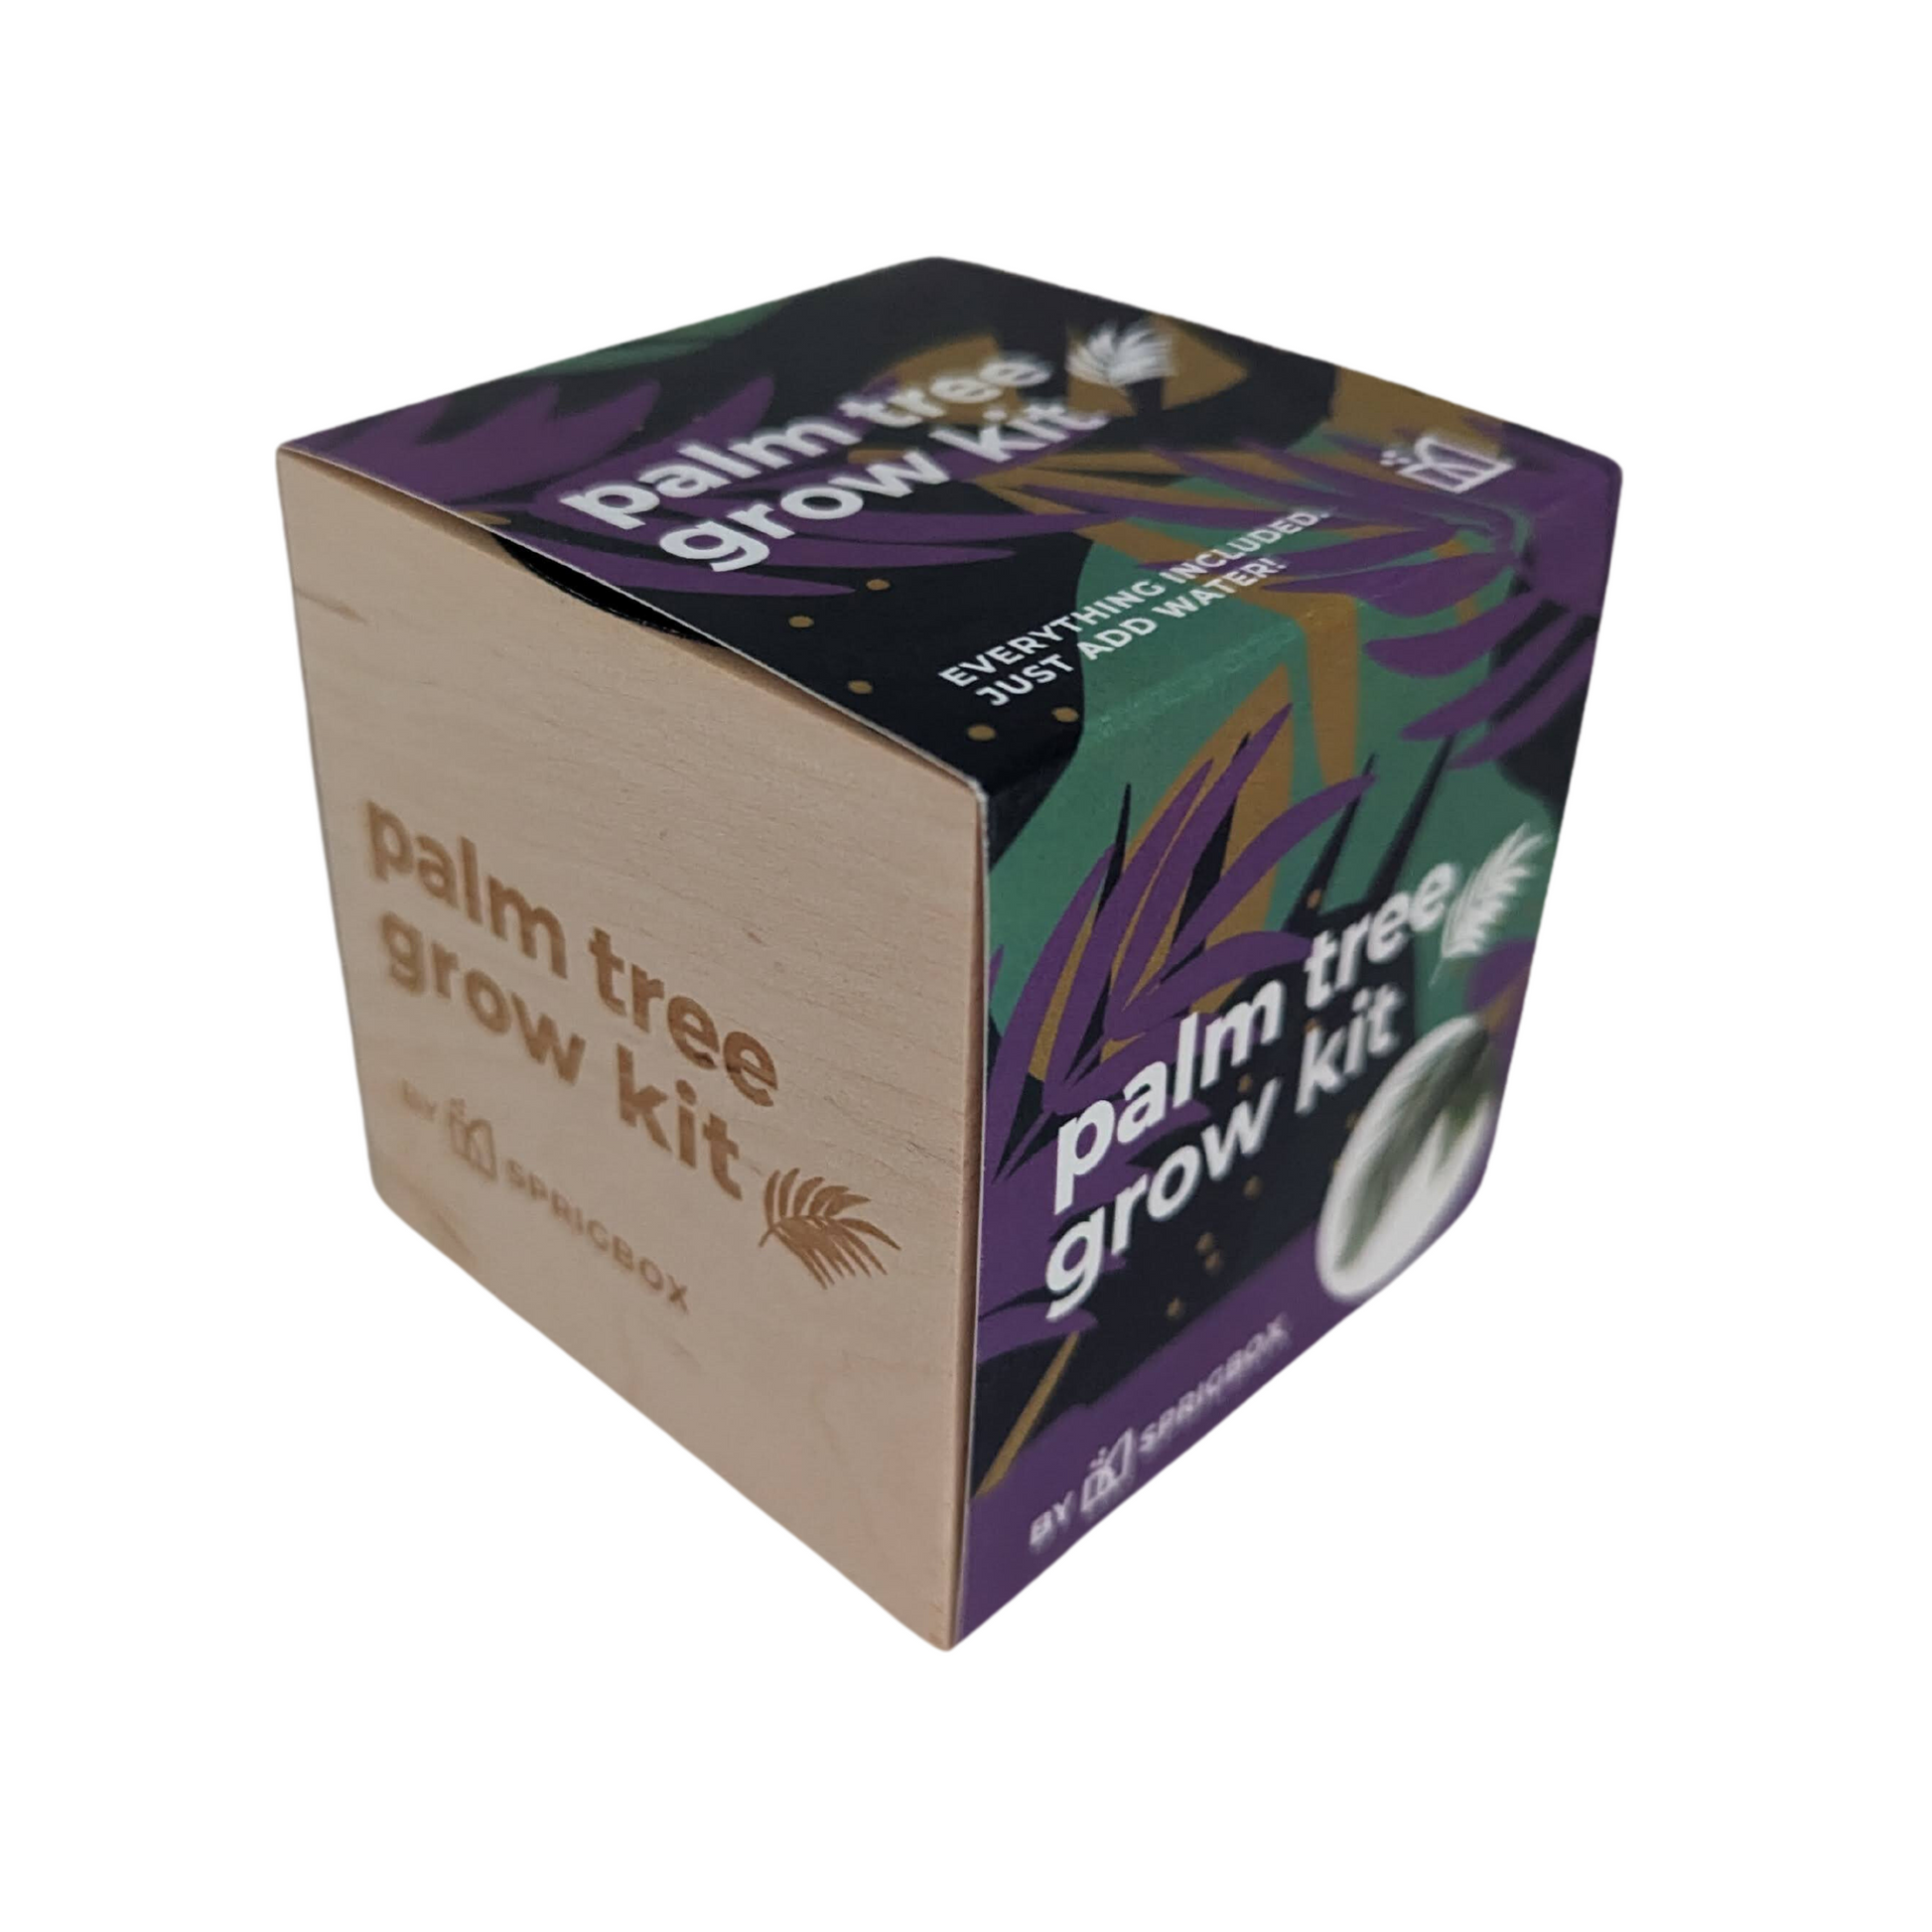 Grow Kit - Palm Tree - Sprigbox